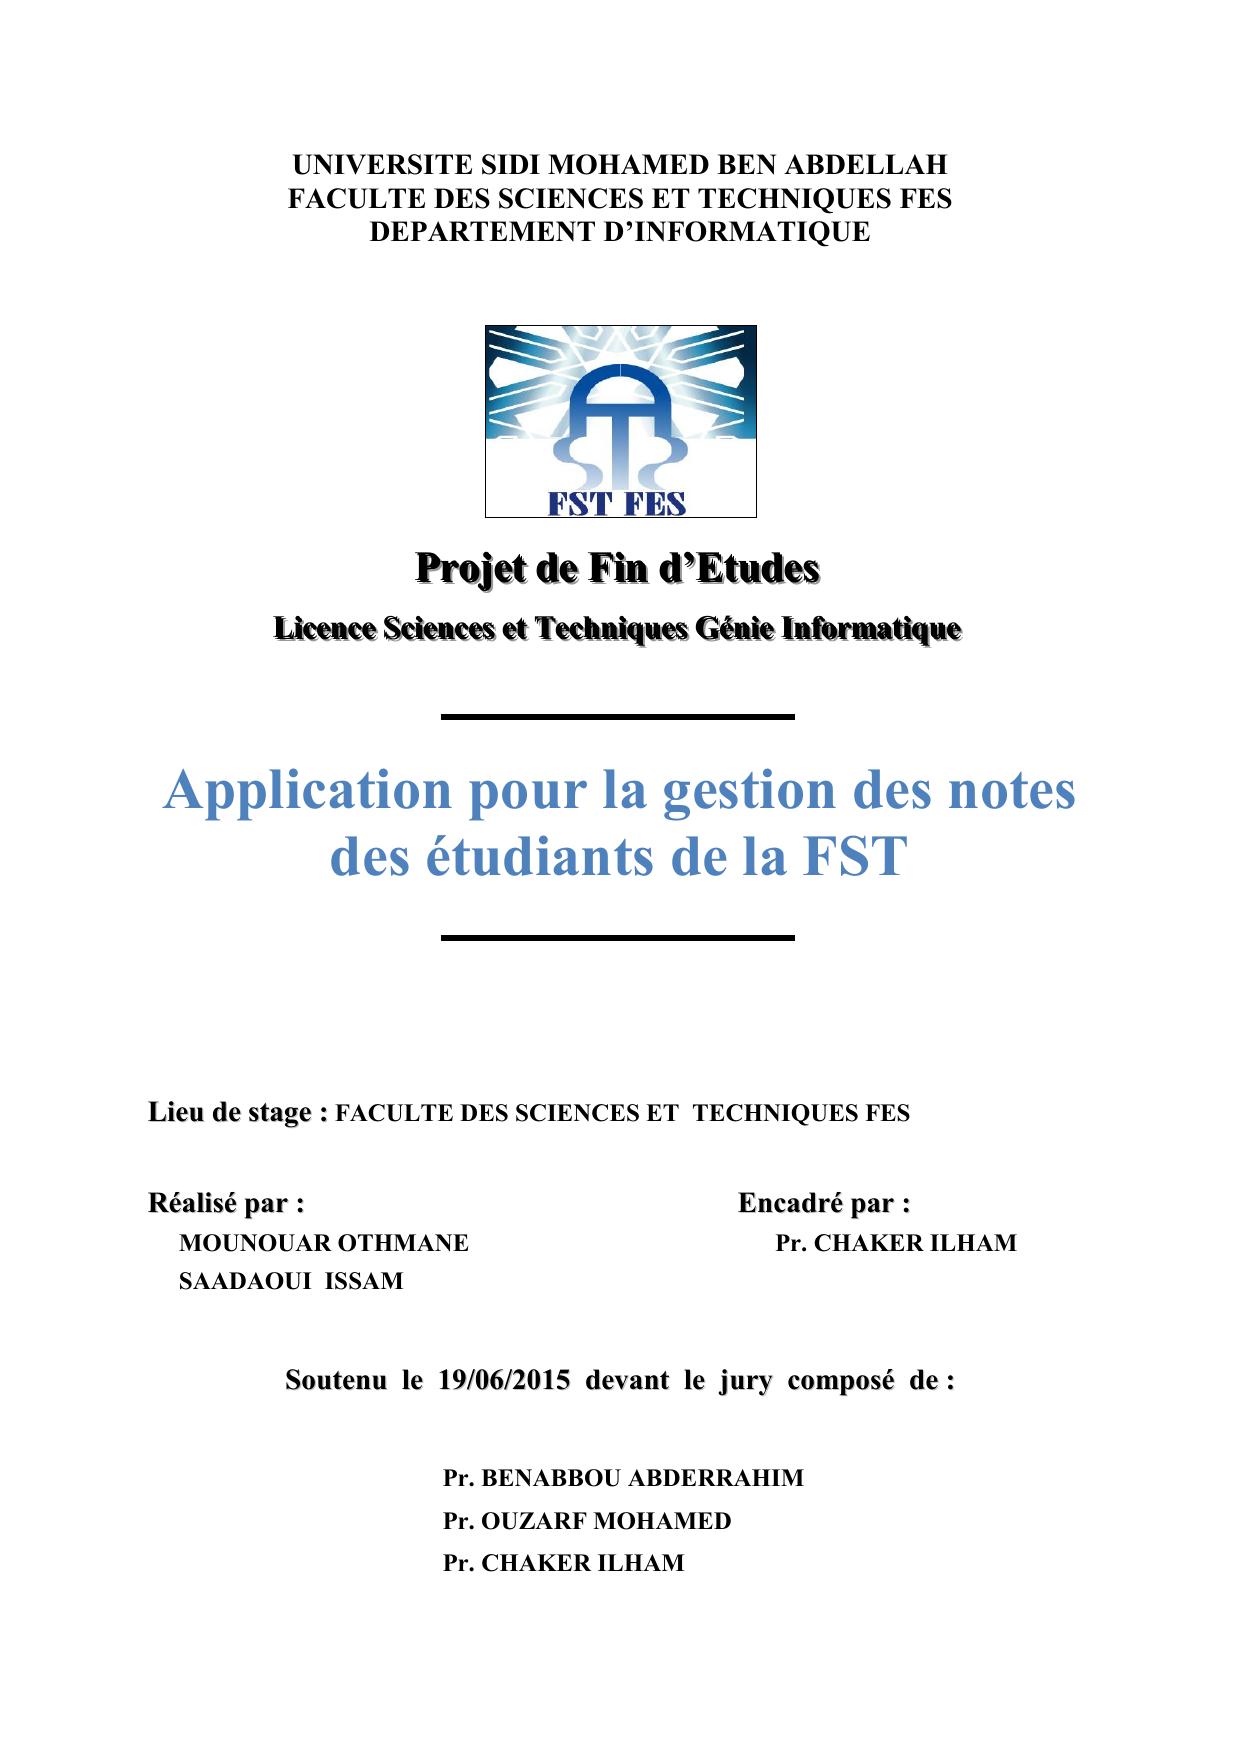 Application pour la gestion des notes des étudiants de la FST